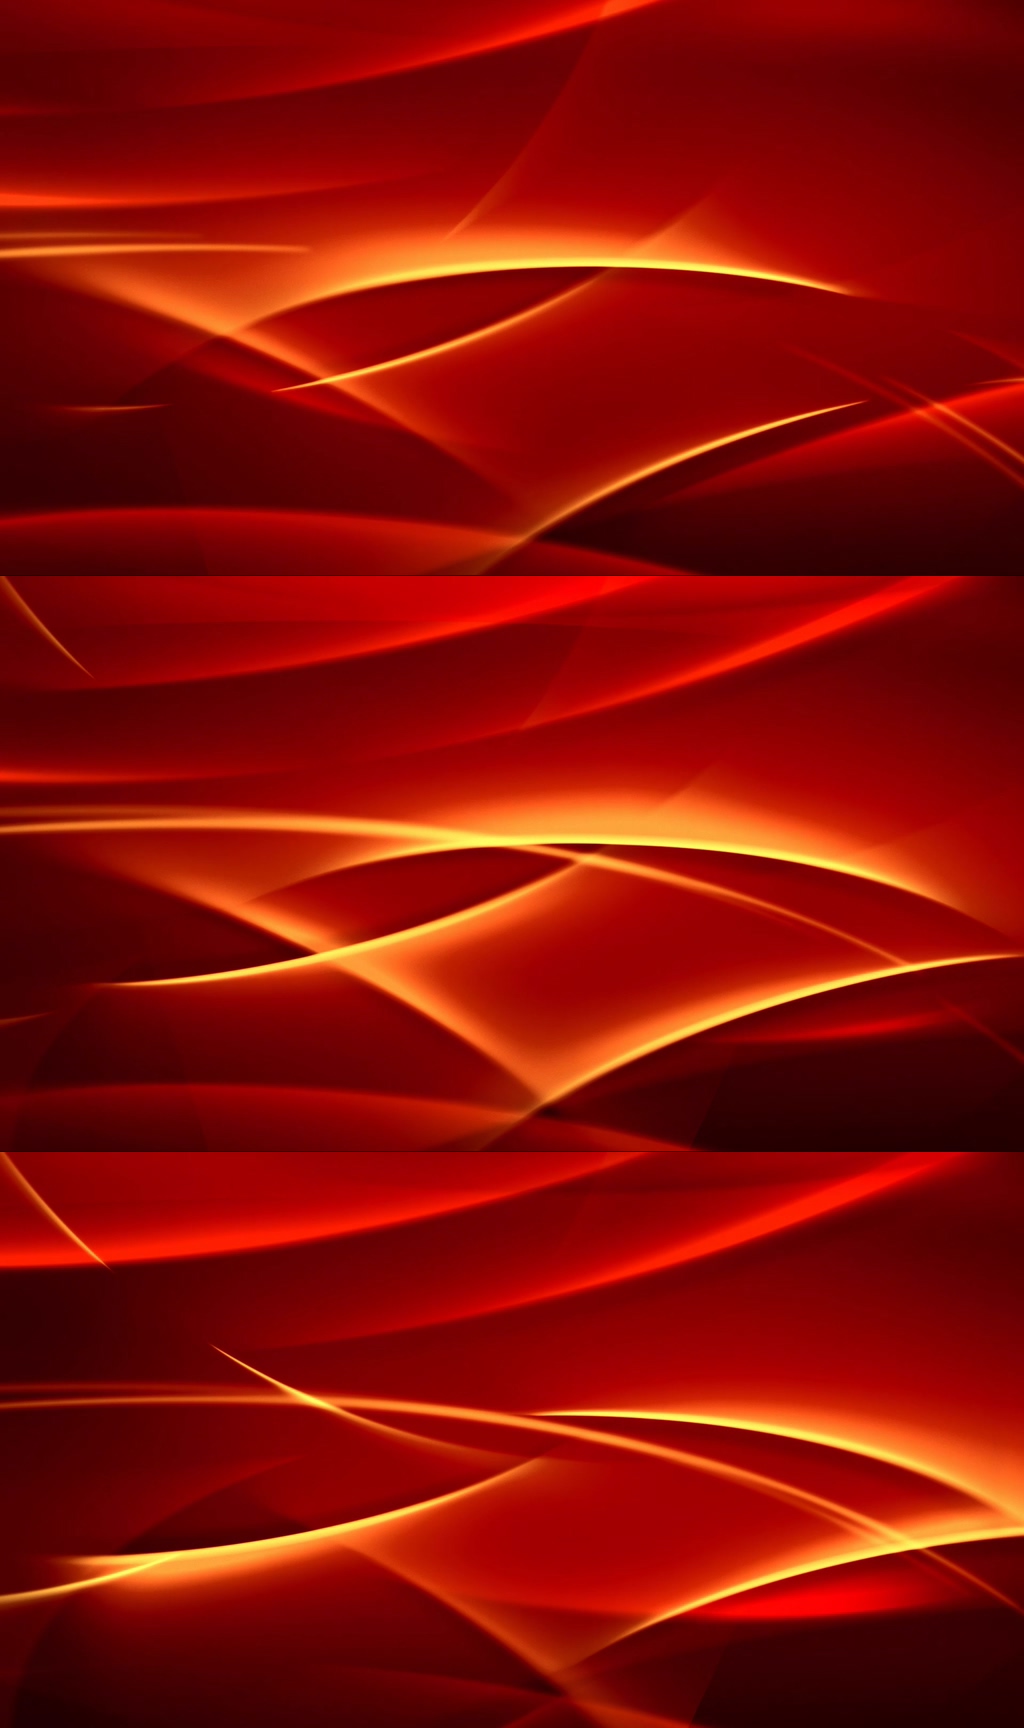 众图网独家提供红色绚丽多彩动态抽象背景素材免费下载,本作品是由